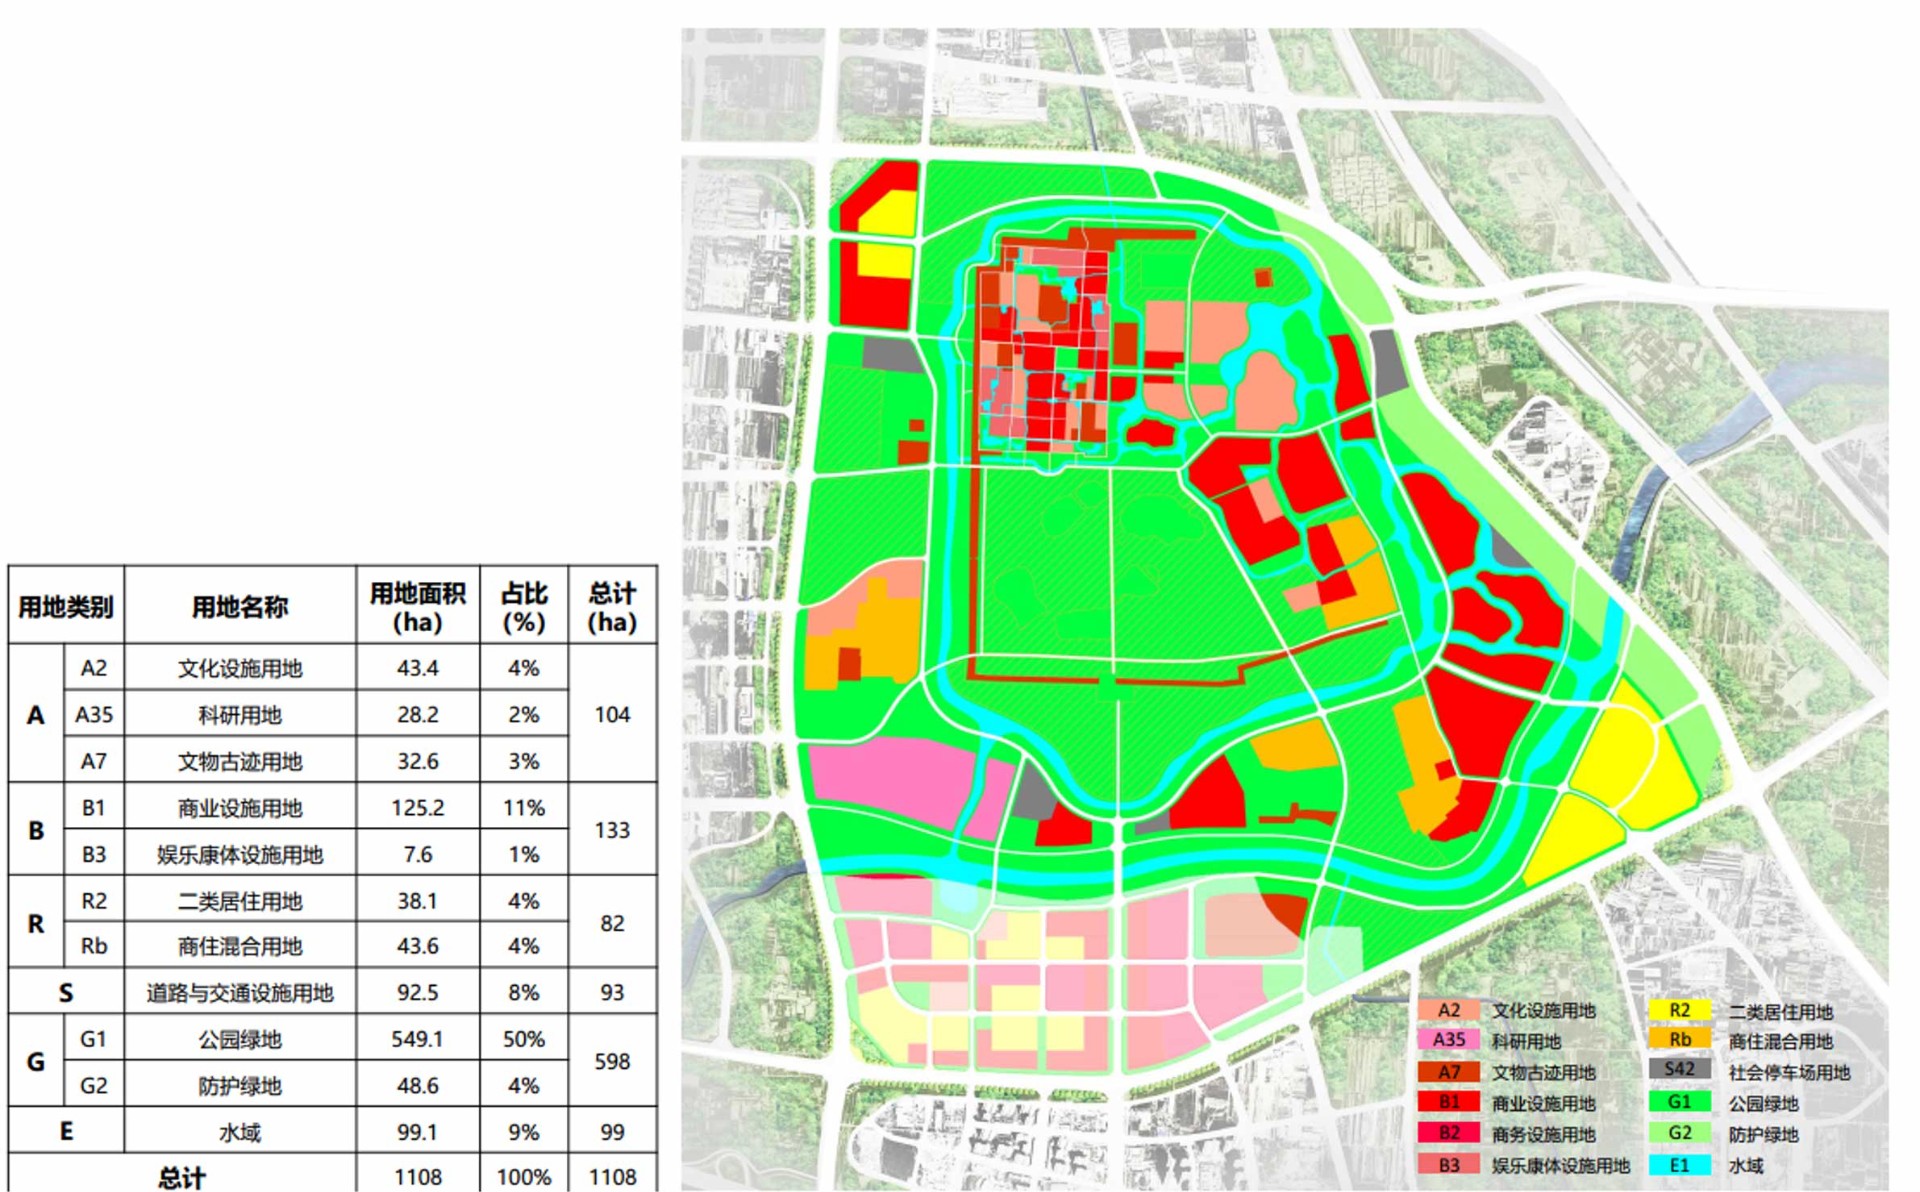 郑州市惠济区空间规划发展研究项目